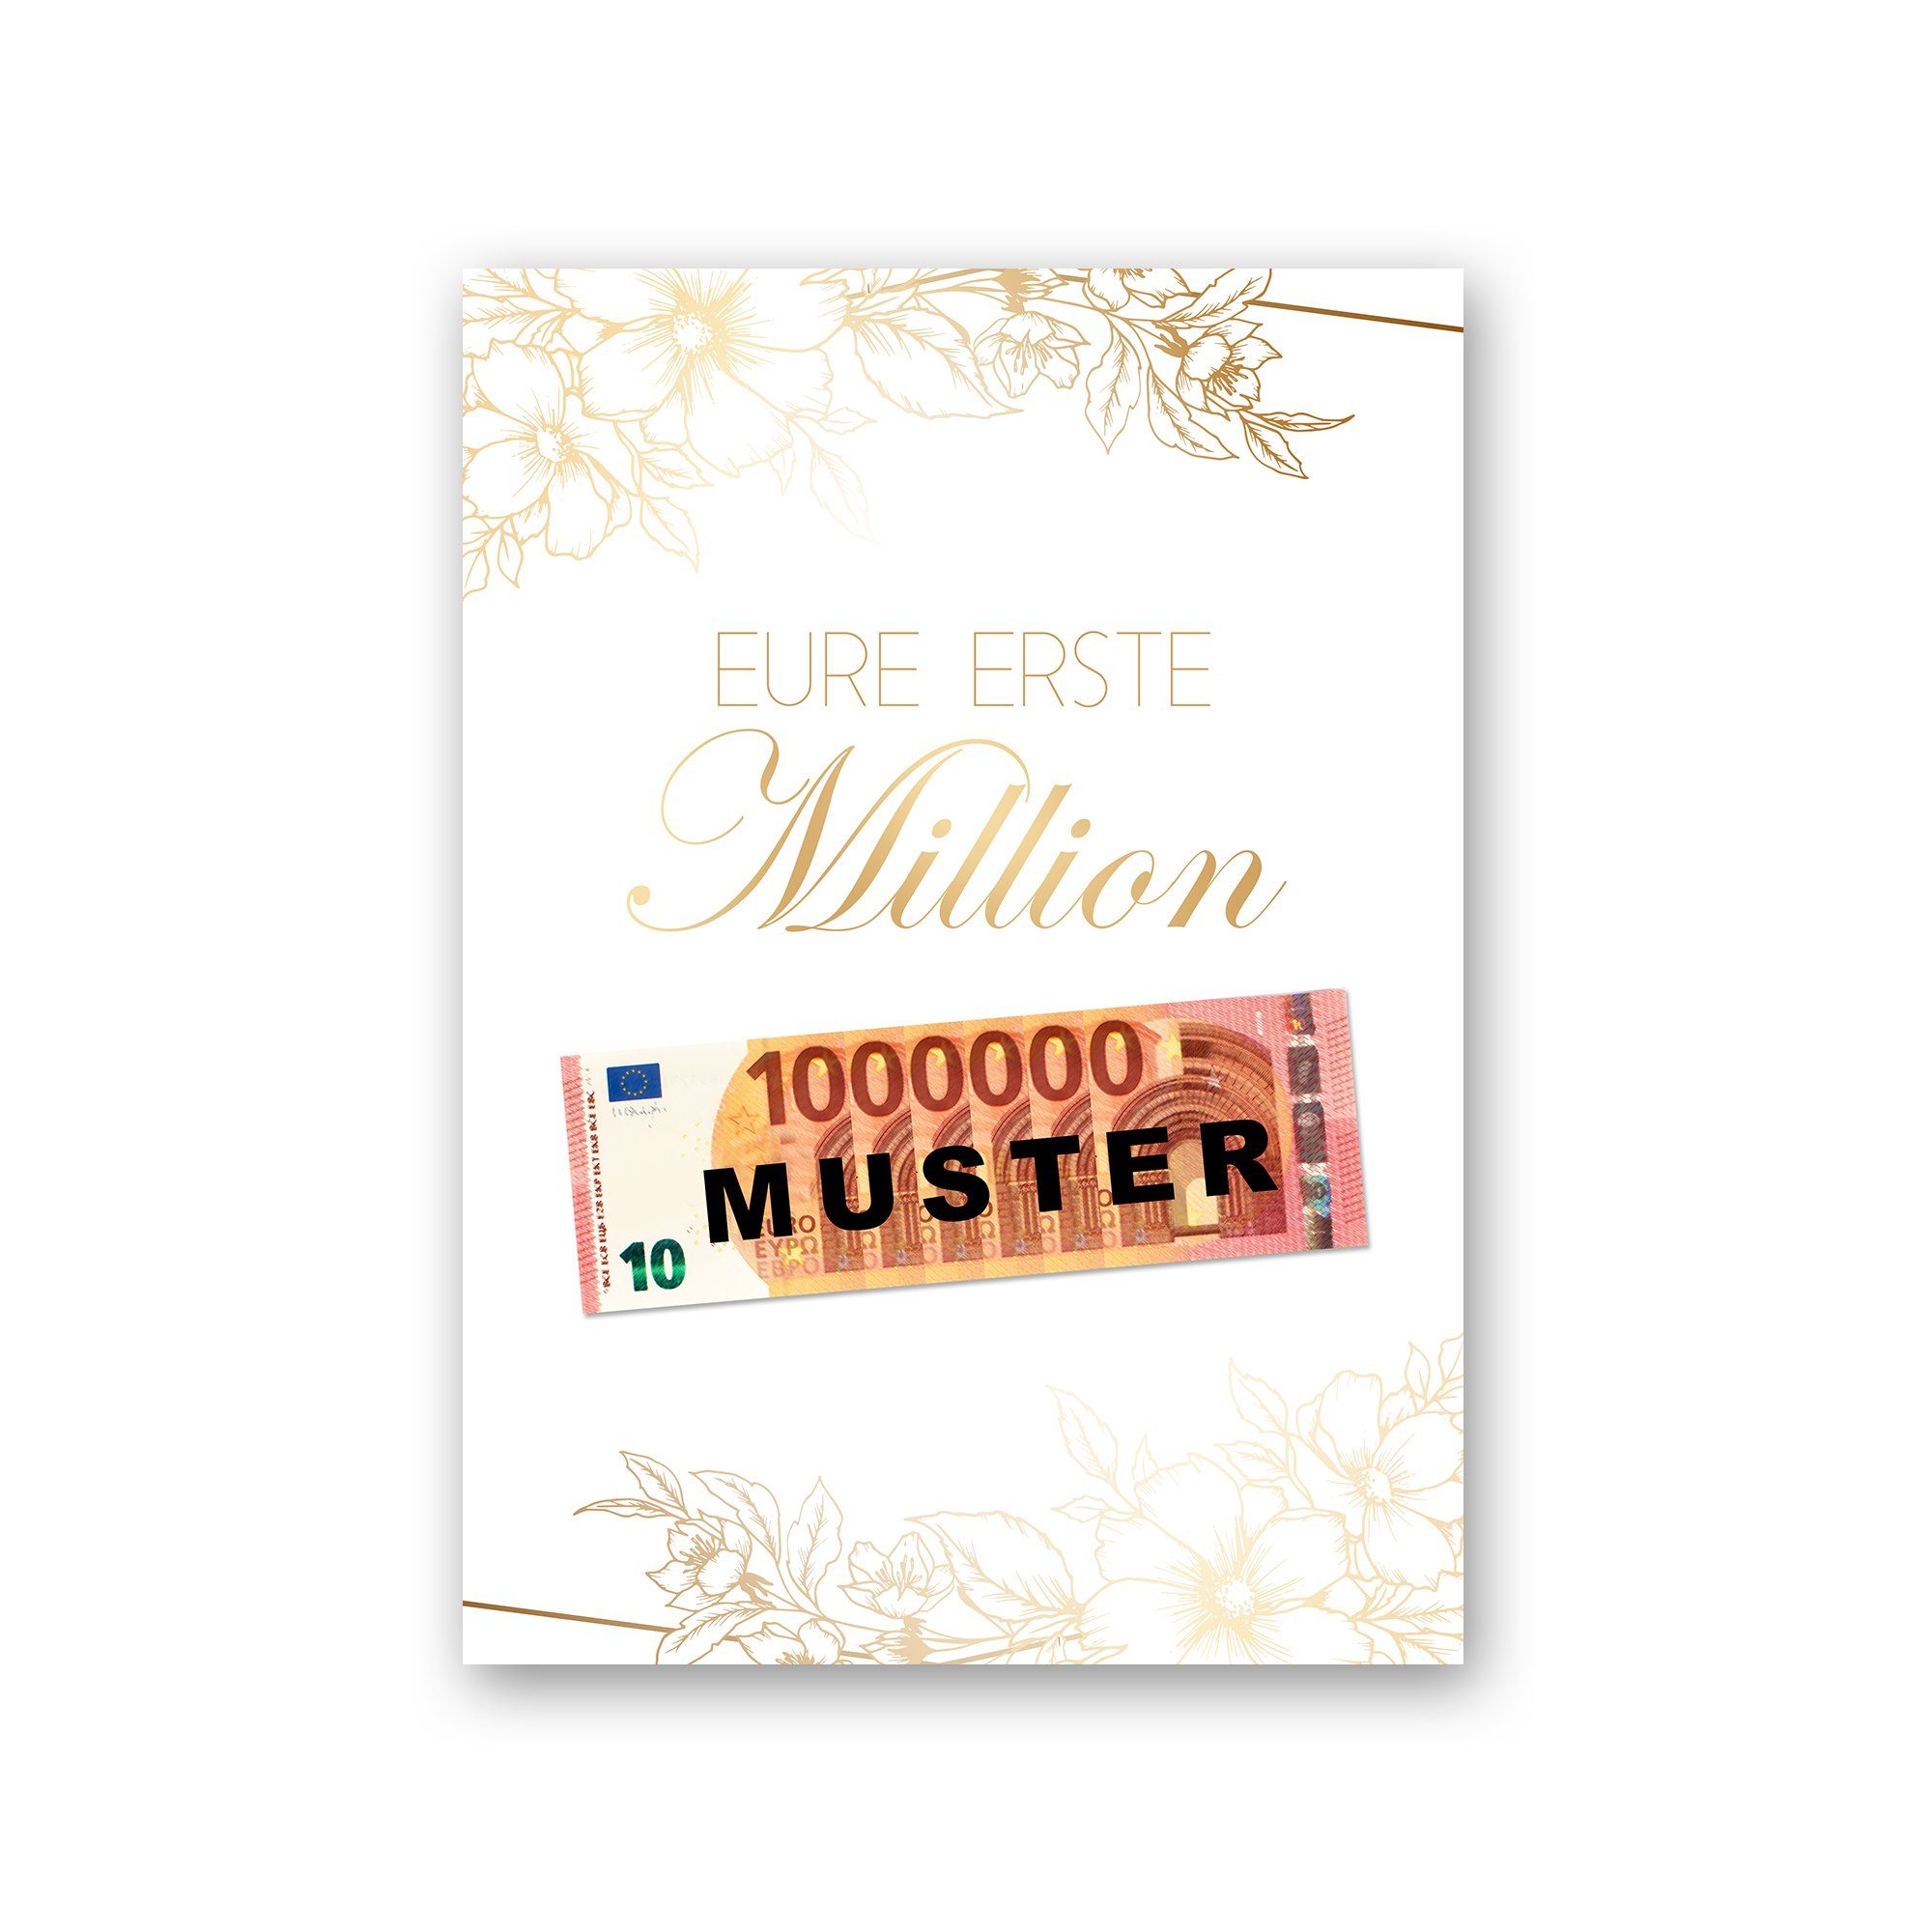 Kreative Feder Poster Premium Poster „Eure erste Million“ - Kunstdruck mit Blumen-Design, optional mit Rahmen; wahlweise DIN A4 oder DIN A3 weißer Rahmen